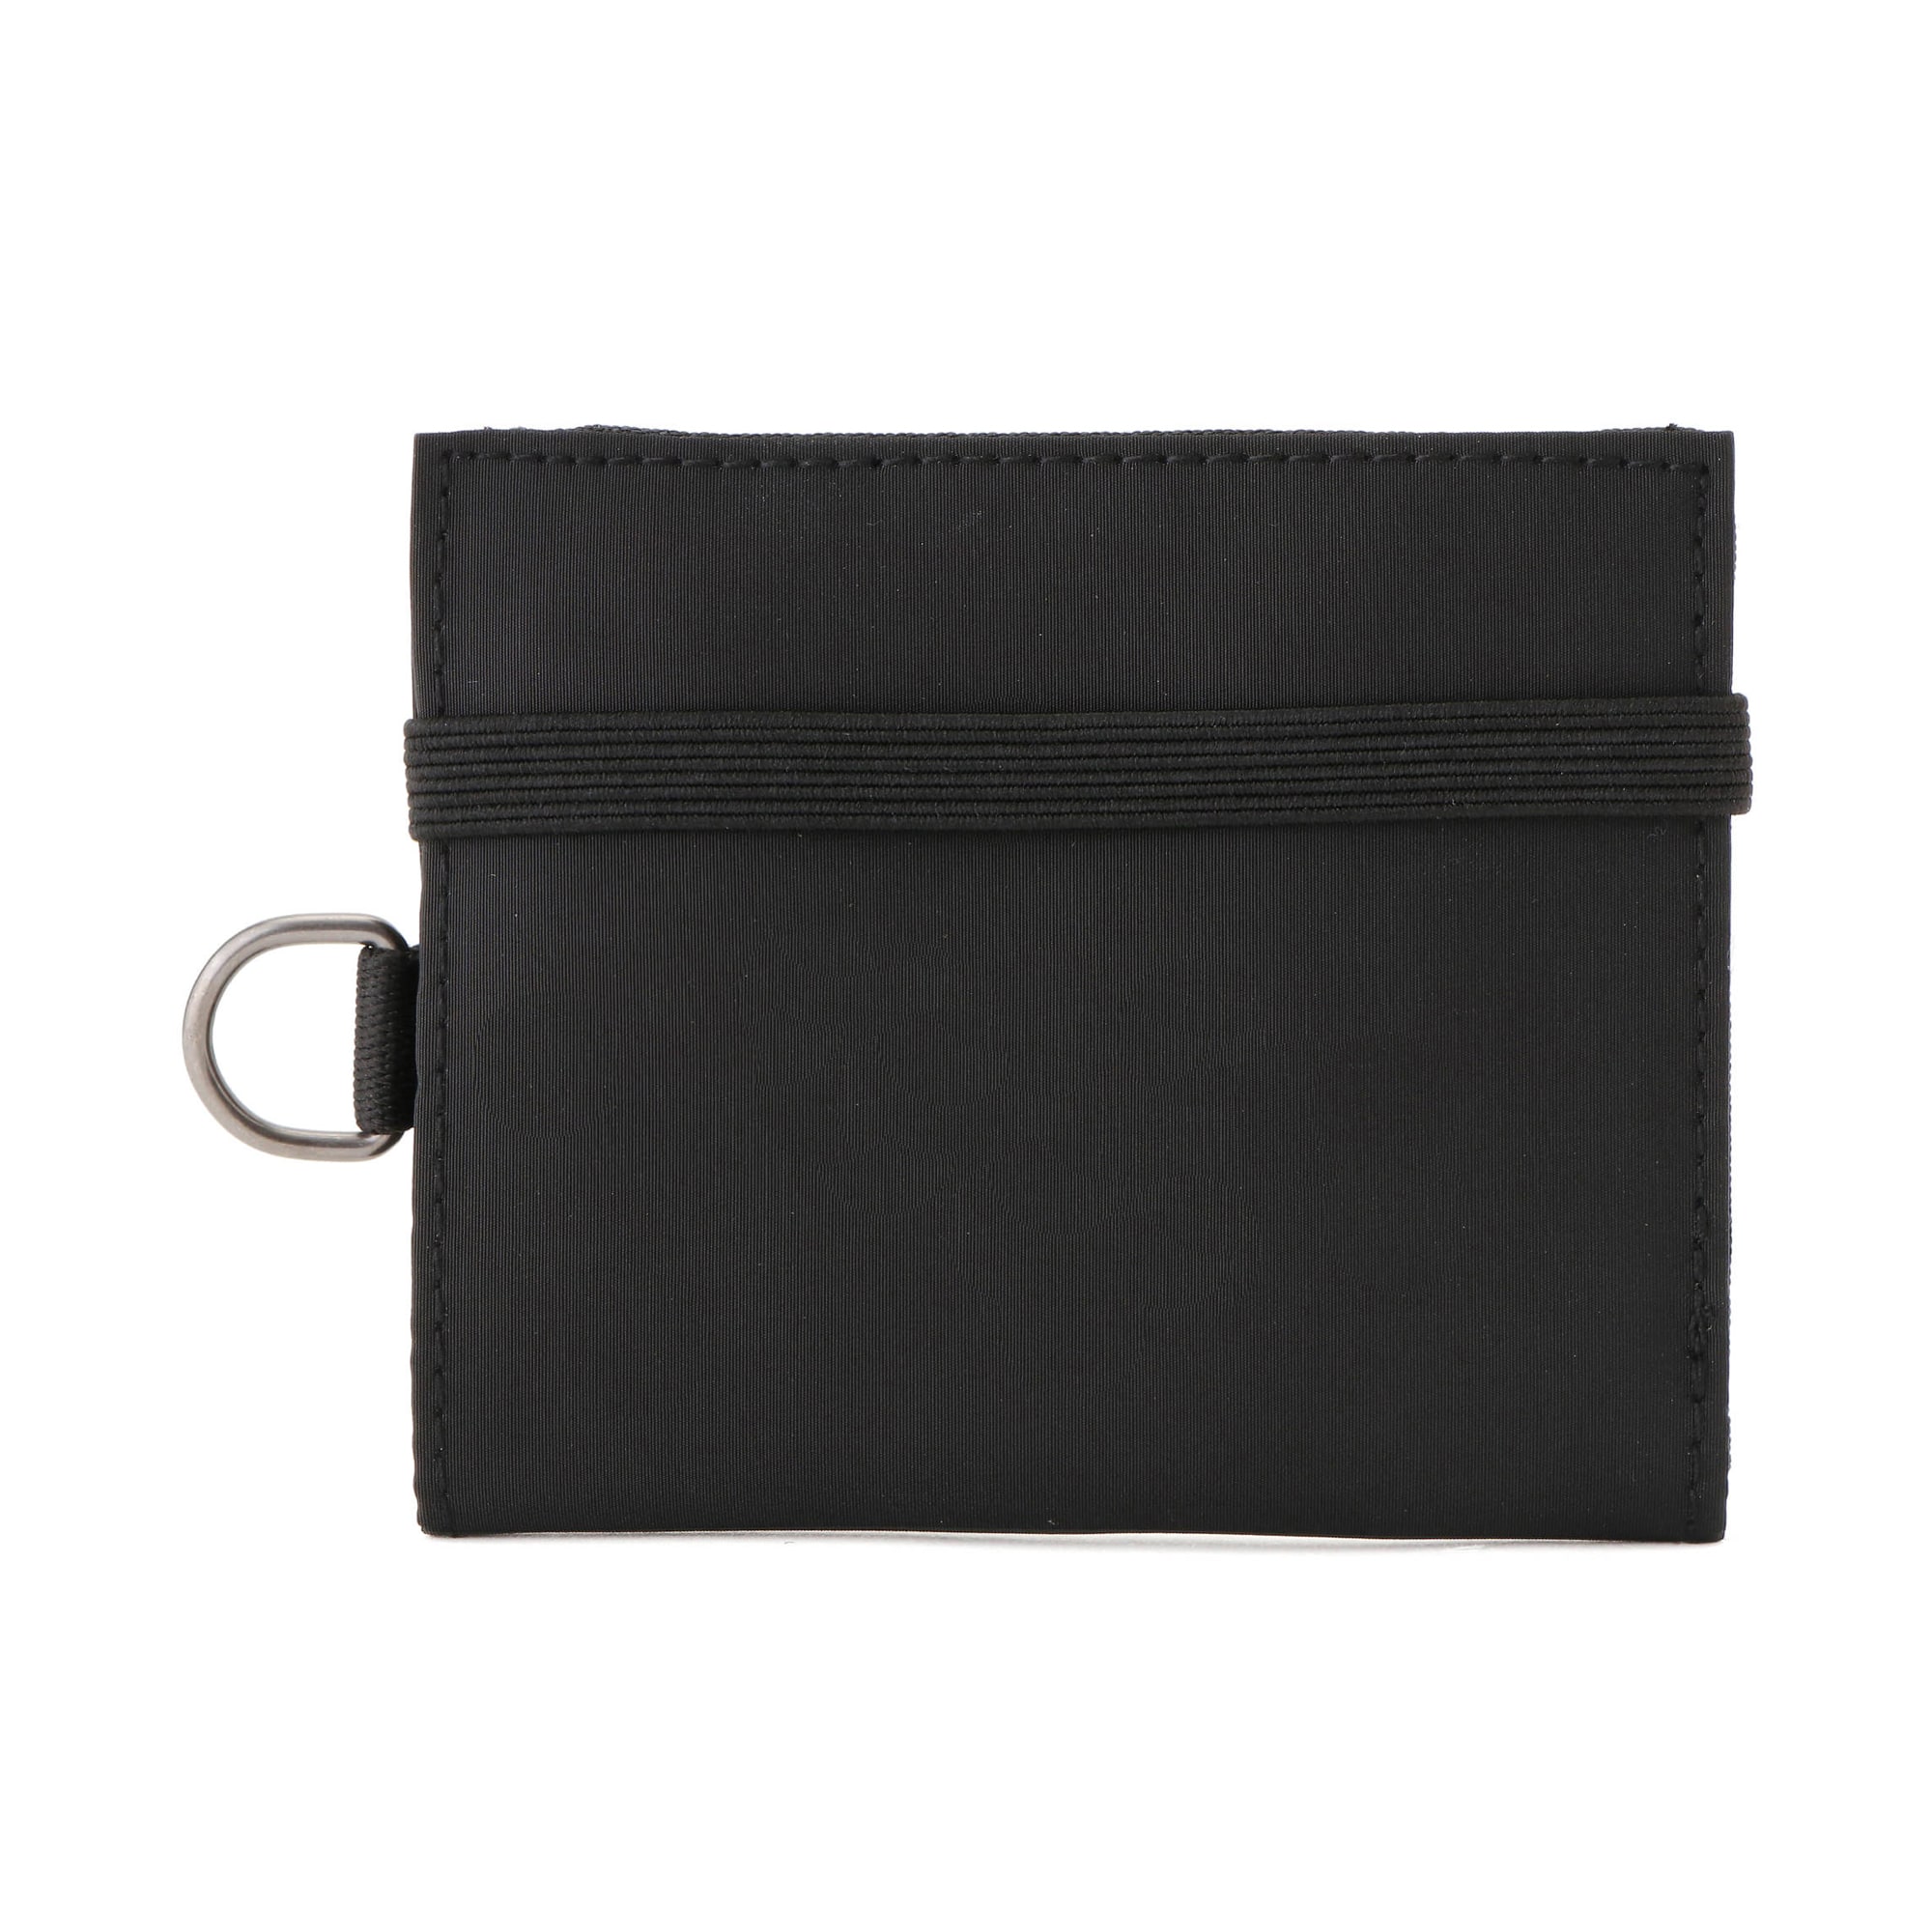 무인양품 일본 패션소품 여행용 지갑 폴리에스테르 메쉬